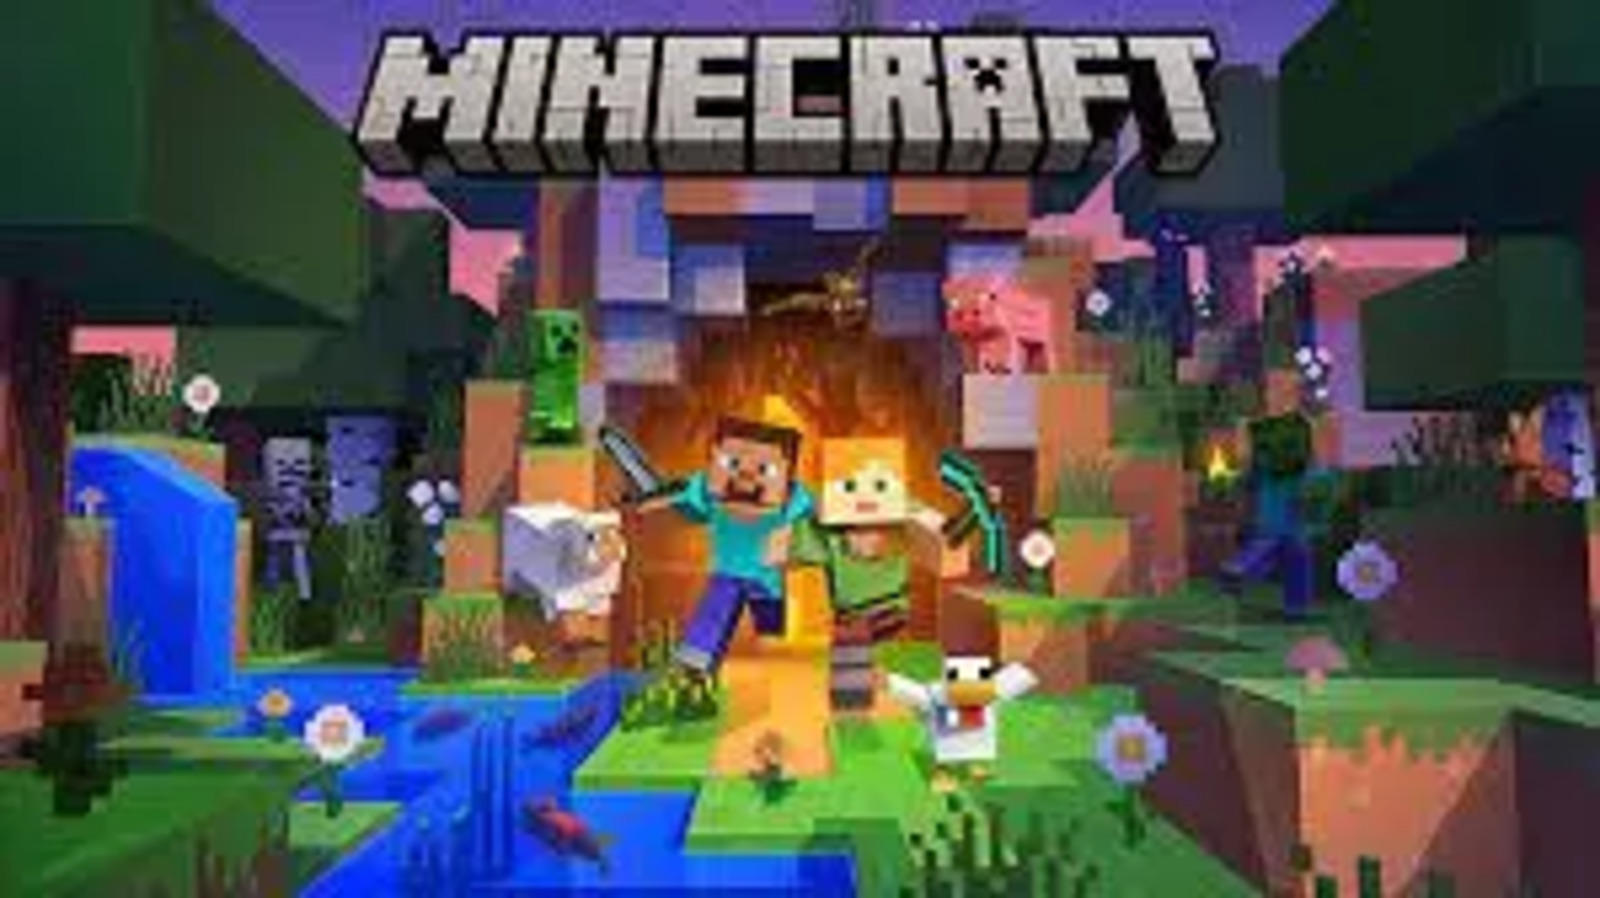 image minecraft block - Google Search  Minecraft, Minecraft logo, Minecraft  multiplayer